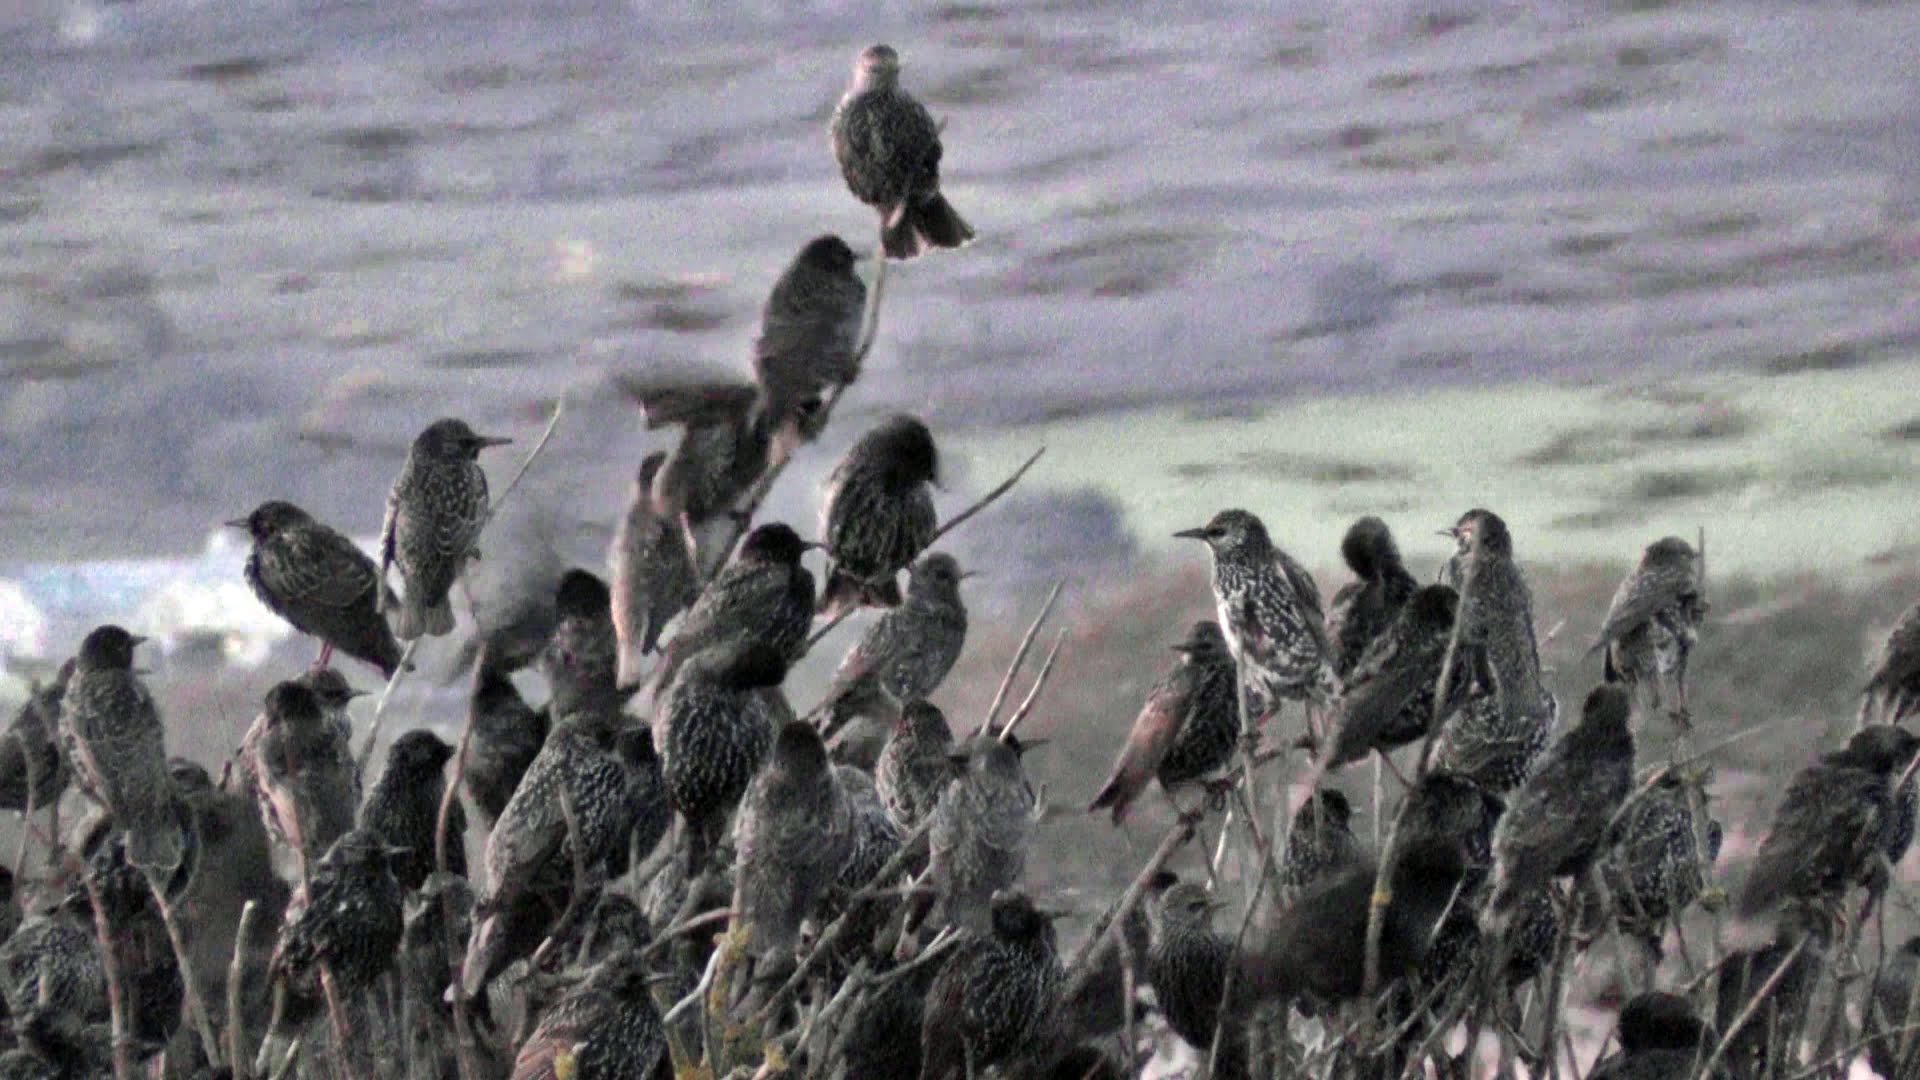 Starlings roosting photo